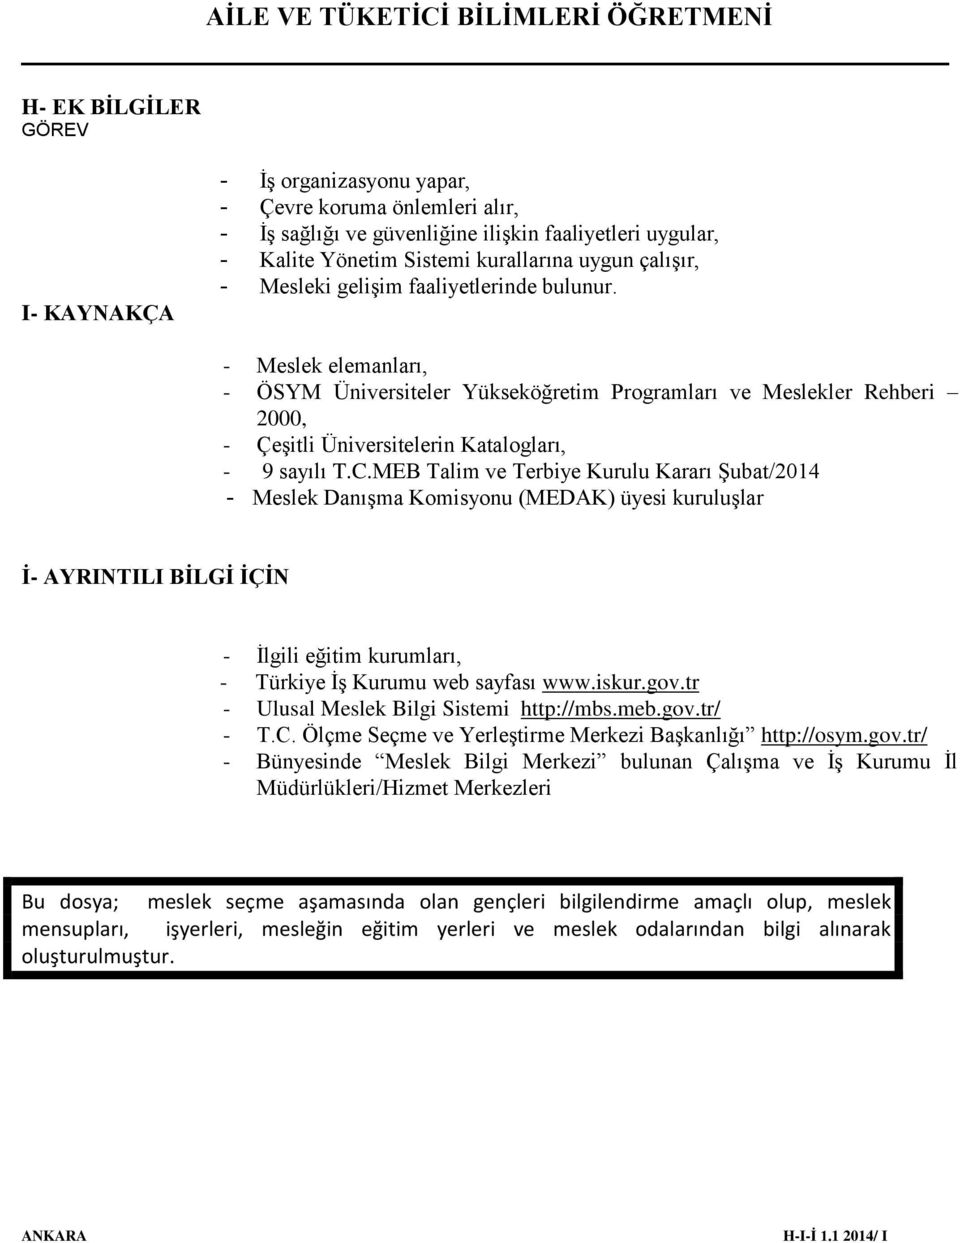 MEB Talim ve Terbiye Kurulu Kararı Şubat/2014 - Meslek Danışma Komisyonu (MEDAK) üyesi kuruluşlar İ- AYRINTILI BİLGİ İÇİN - İlgili eğitim kurumları, - Türkiye İş Kurumu web sayfası www.iskur.gov.